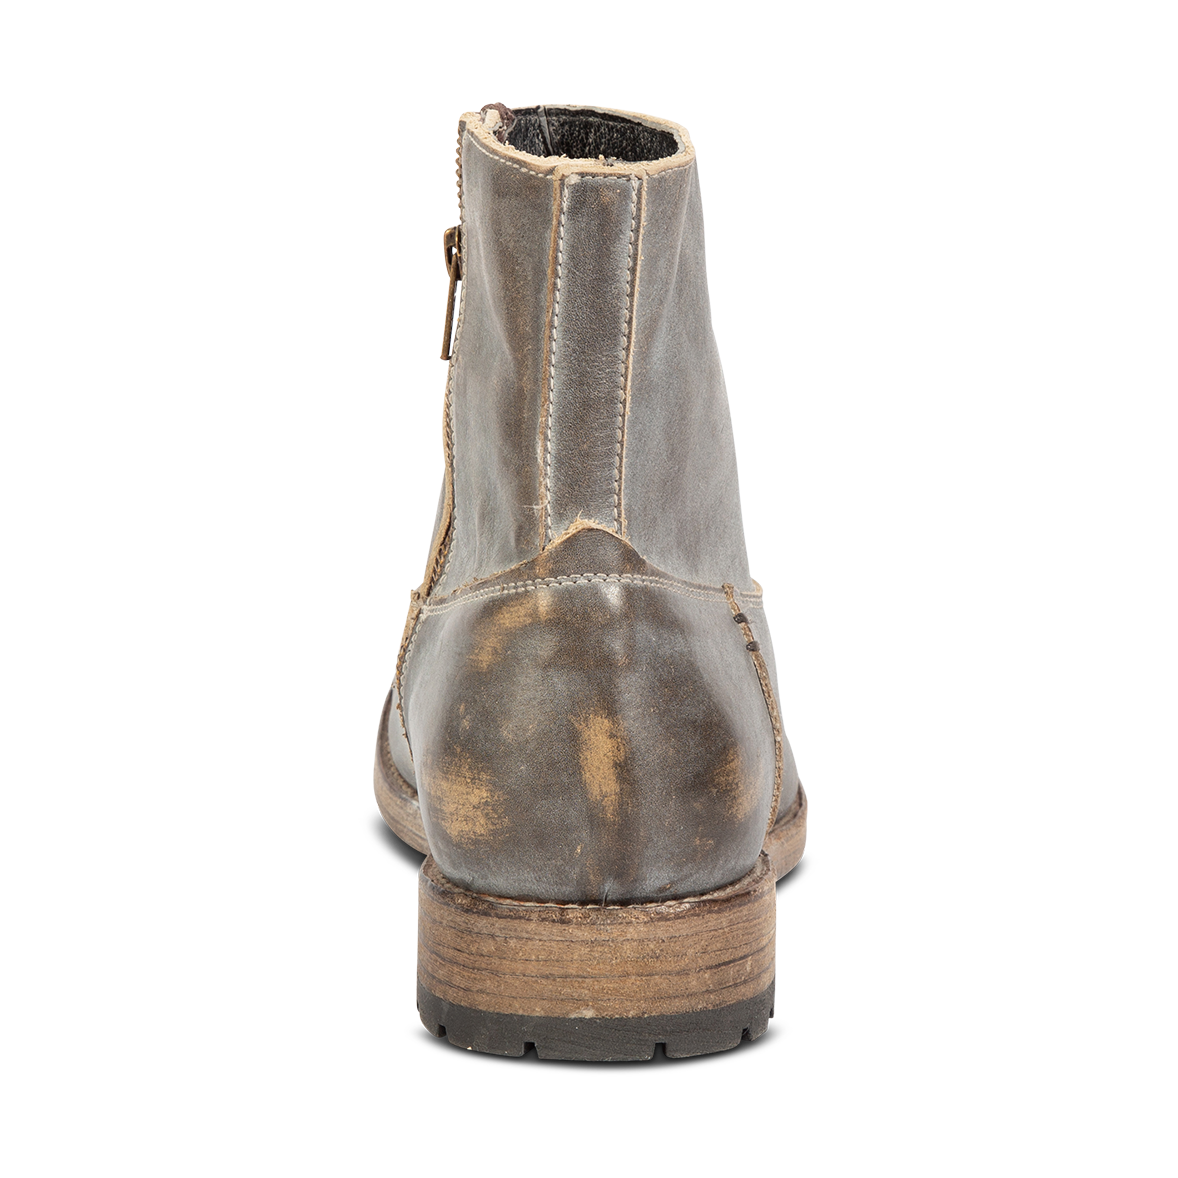 Back view showing low heel on FREEBIRD men's Pueblo ice ankle boot